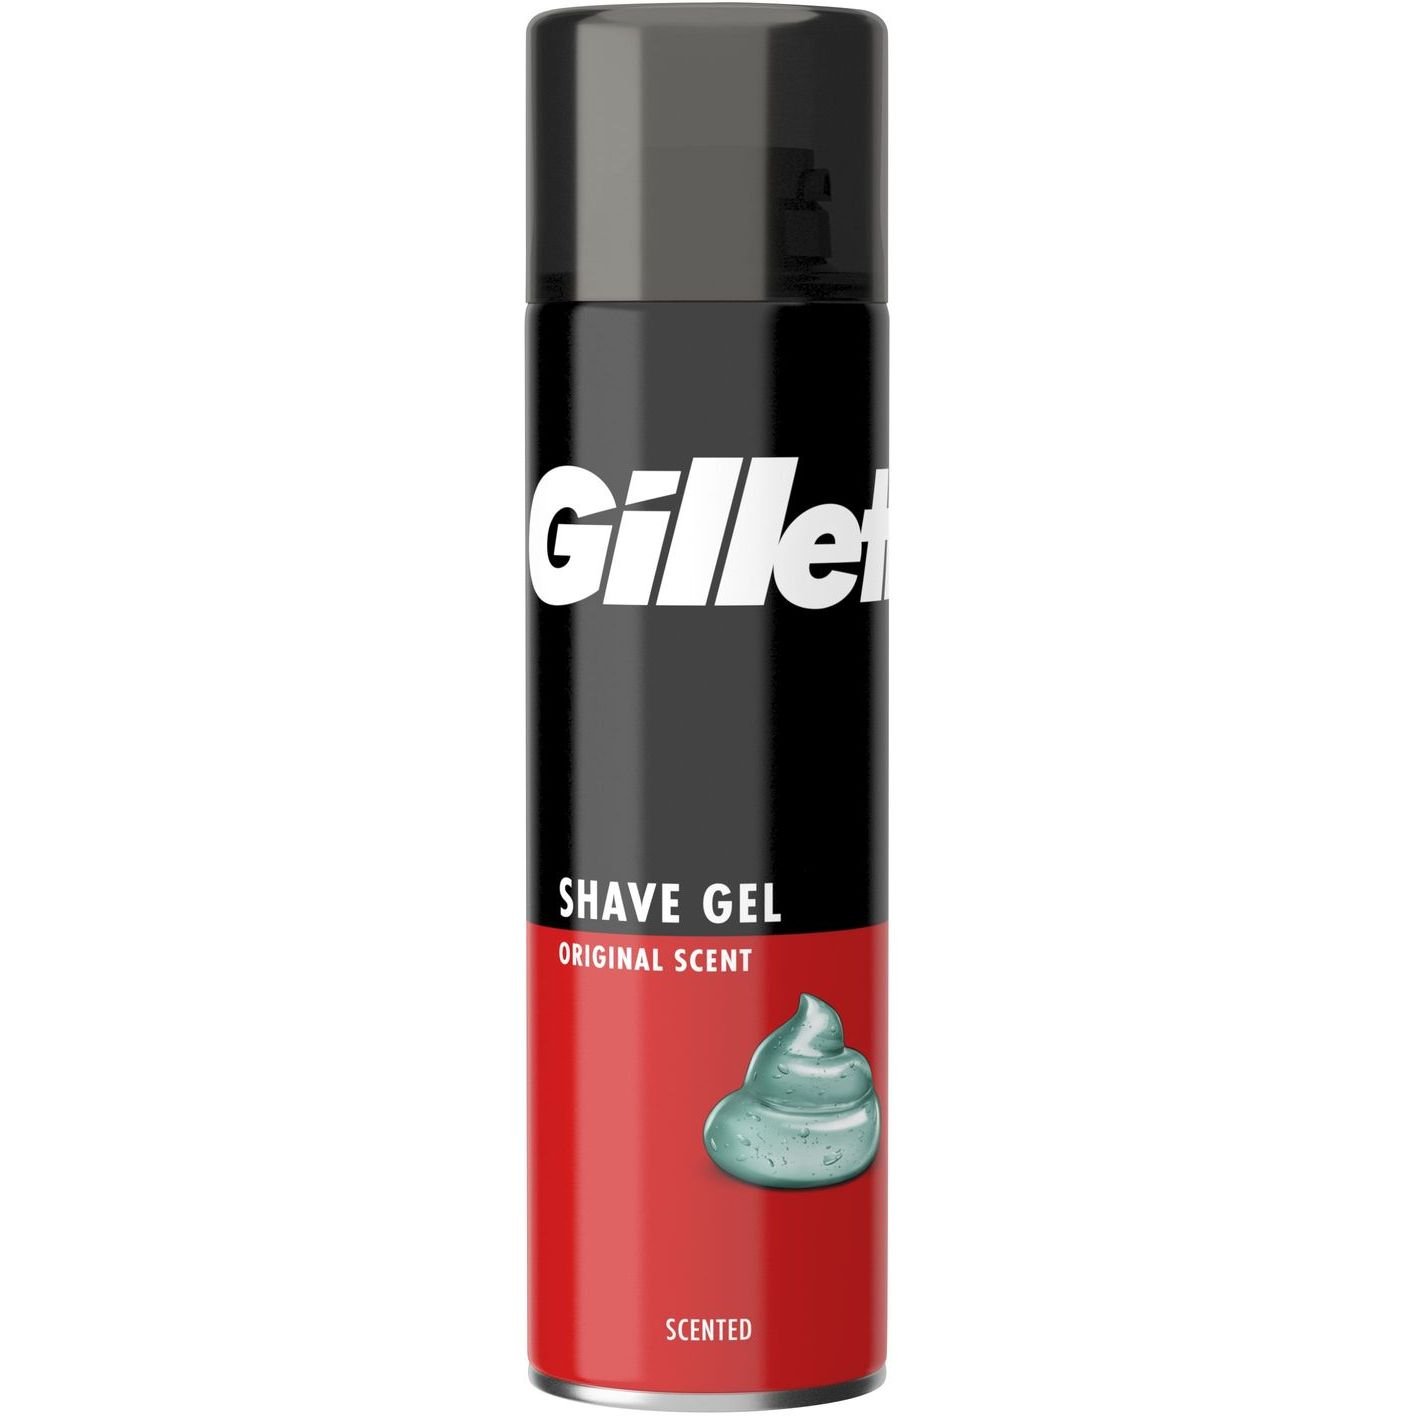 Гель для бритья Gillette Classic Original Scent, 200 мл - фото 1